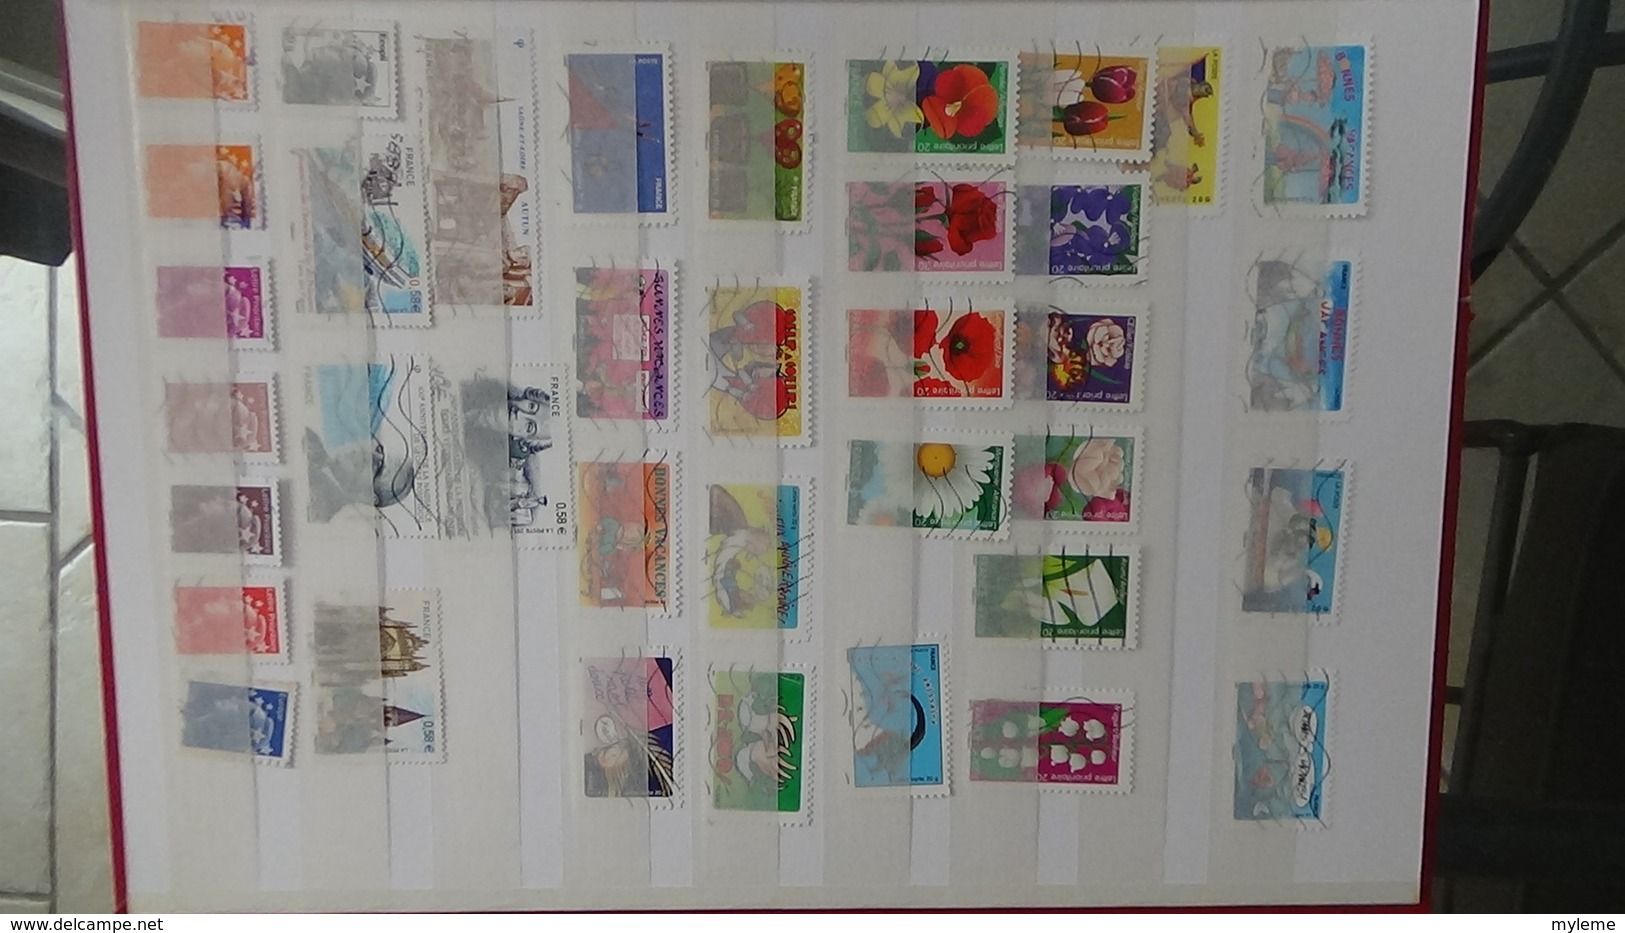 Collection France oblitéré timbres de 2007 à 2013 environ. Idéal pour completer une collection